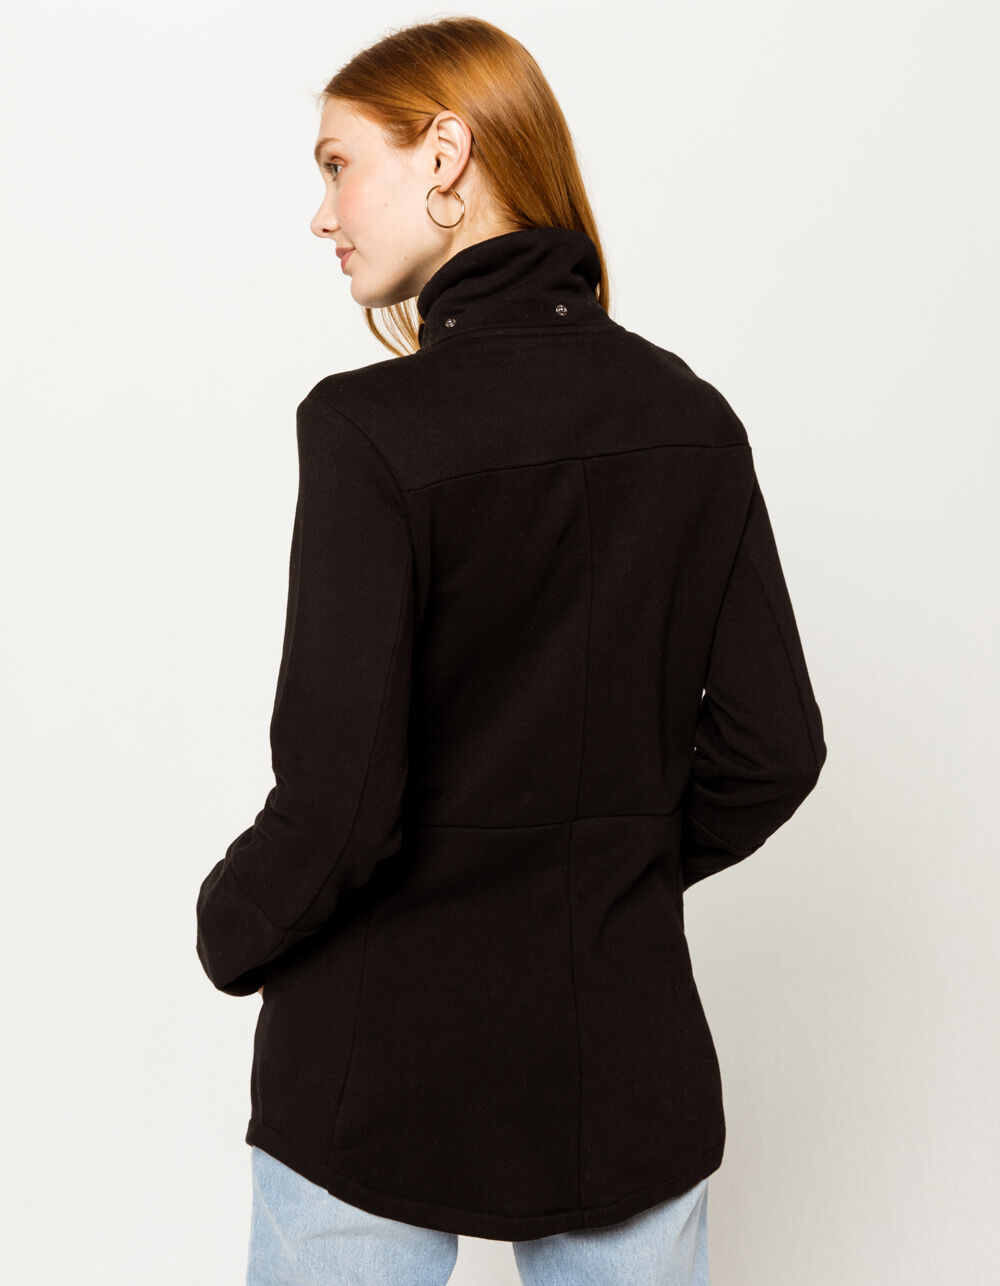 Chemie Onophoudelijk Rijke man HURLEY Winchester Black Fleece Womens Jacket - BLACK | Tillys